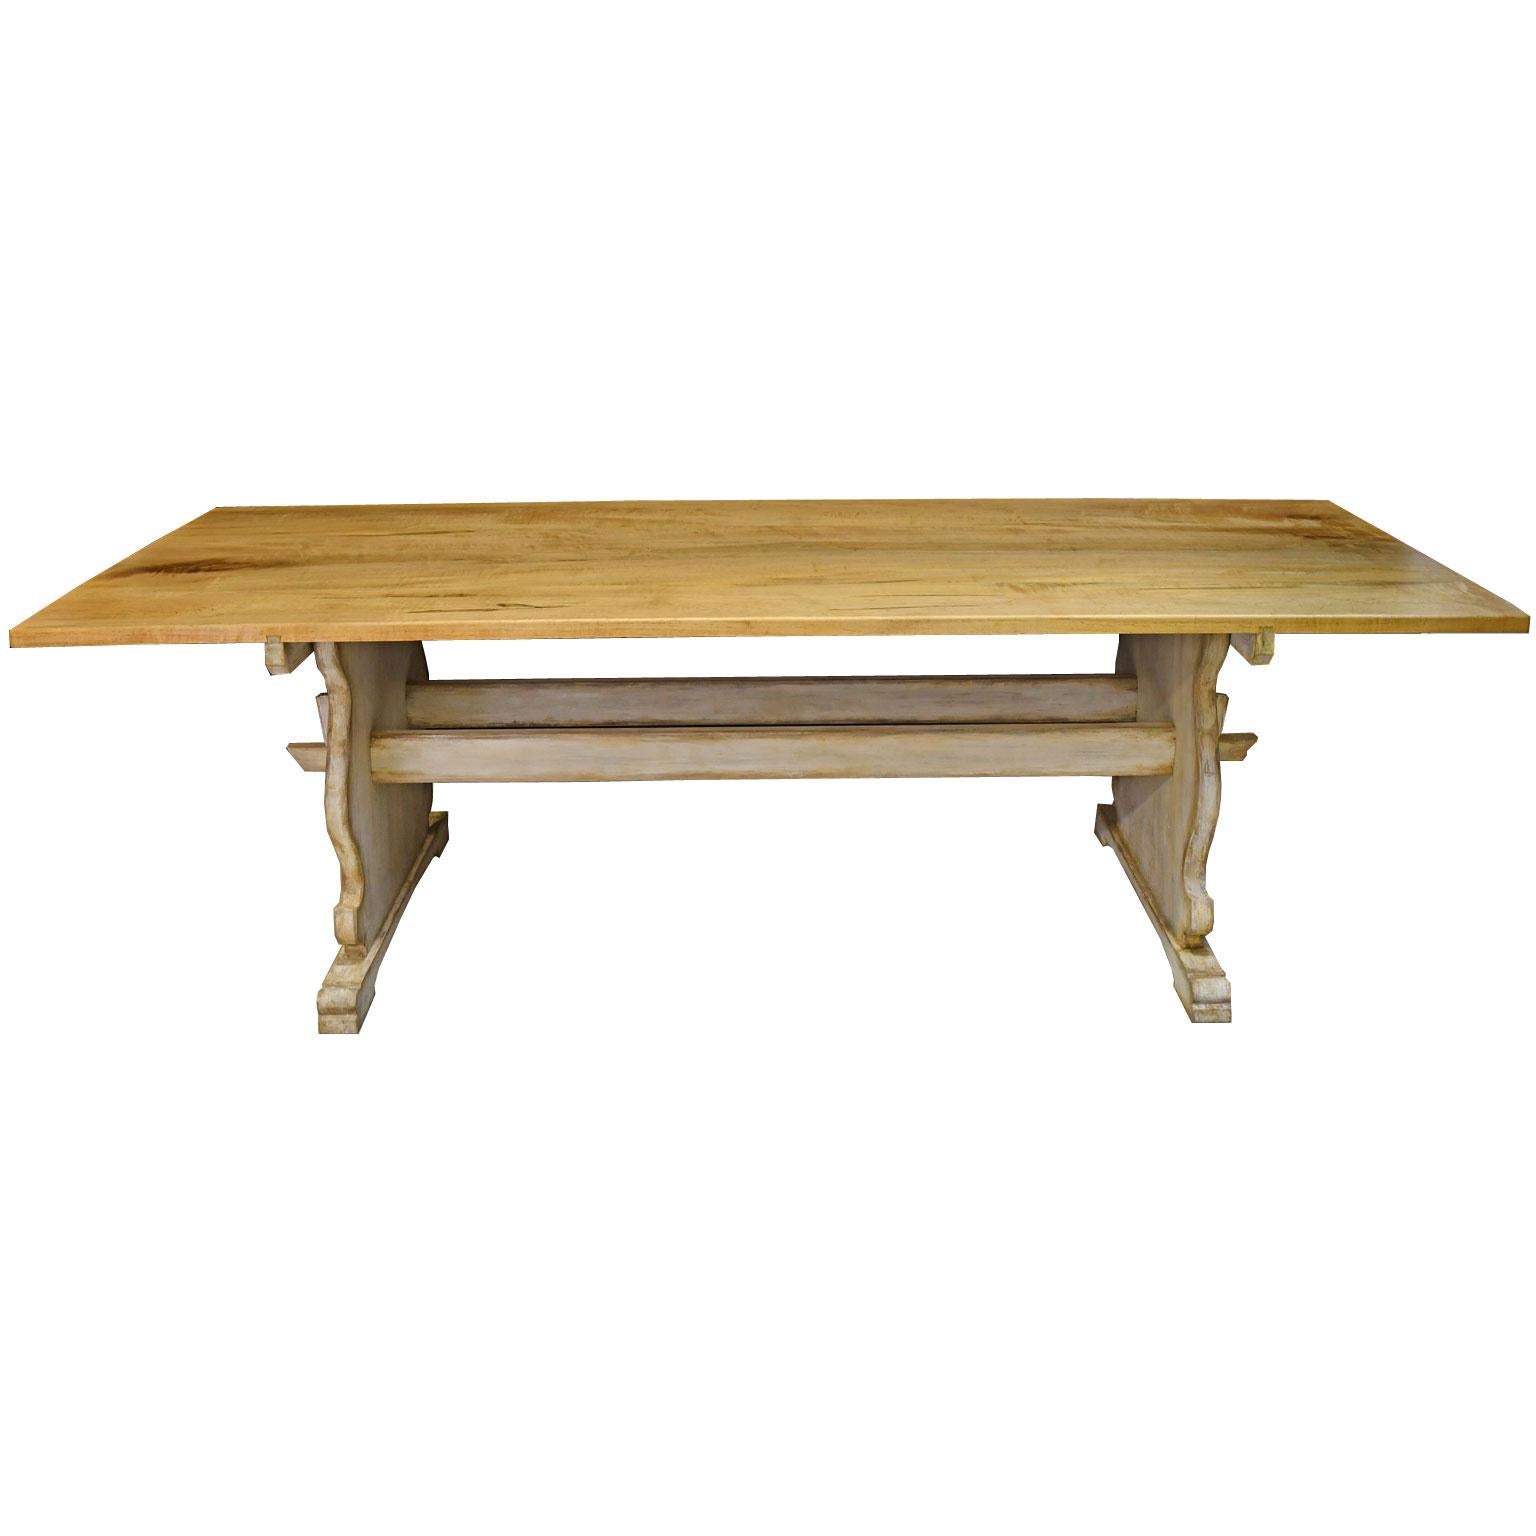 Inspiriert von einem schwedisch-gustavischen Tisch aus dem 18. Jahrhundert, der sich in unserem Bestand befindet, wurde dieser sehr schöne und solide gefertigte Esstisch in unserer Werkstatt hergestellt. Der Tisch kann mit einer Platte aus Ahorn,